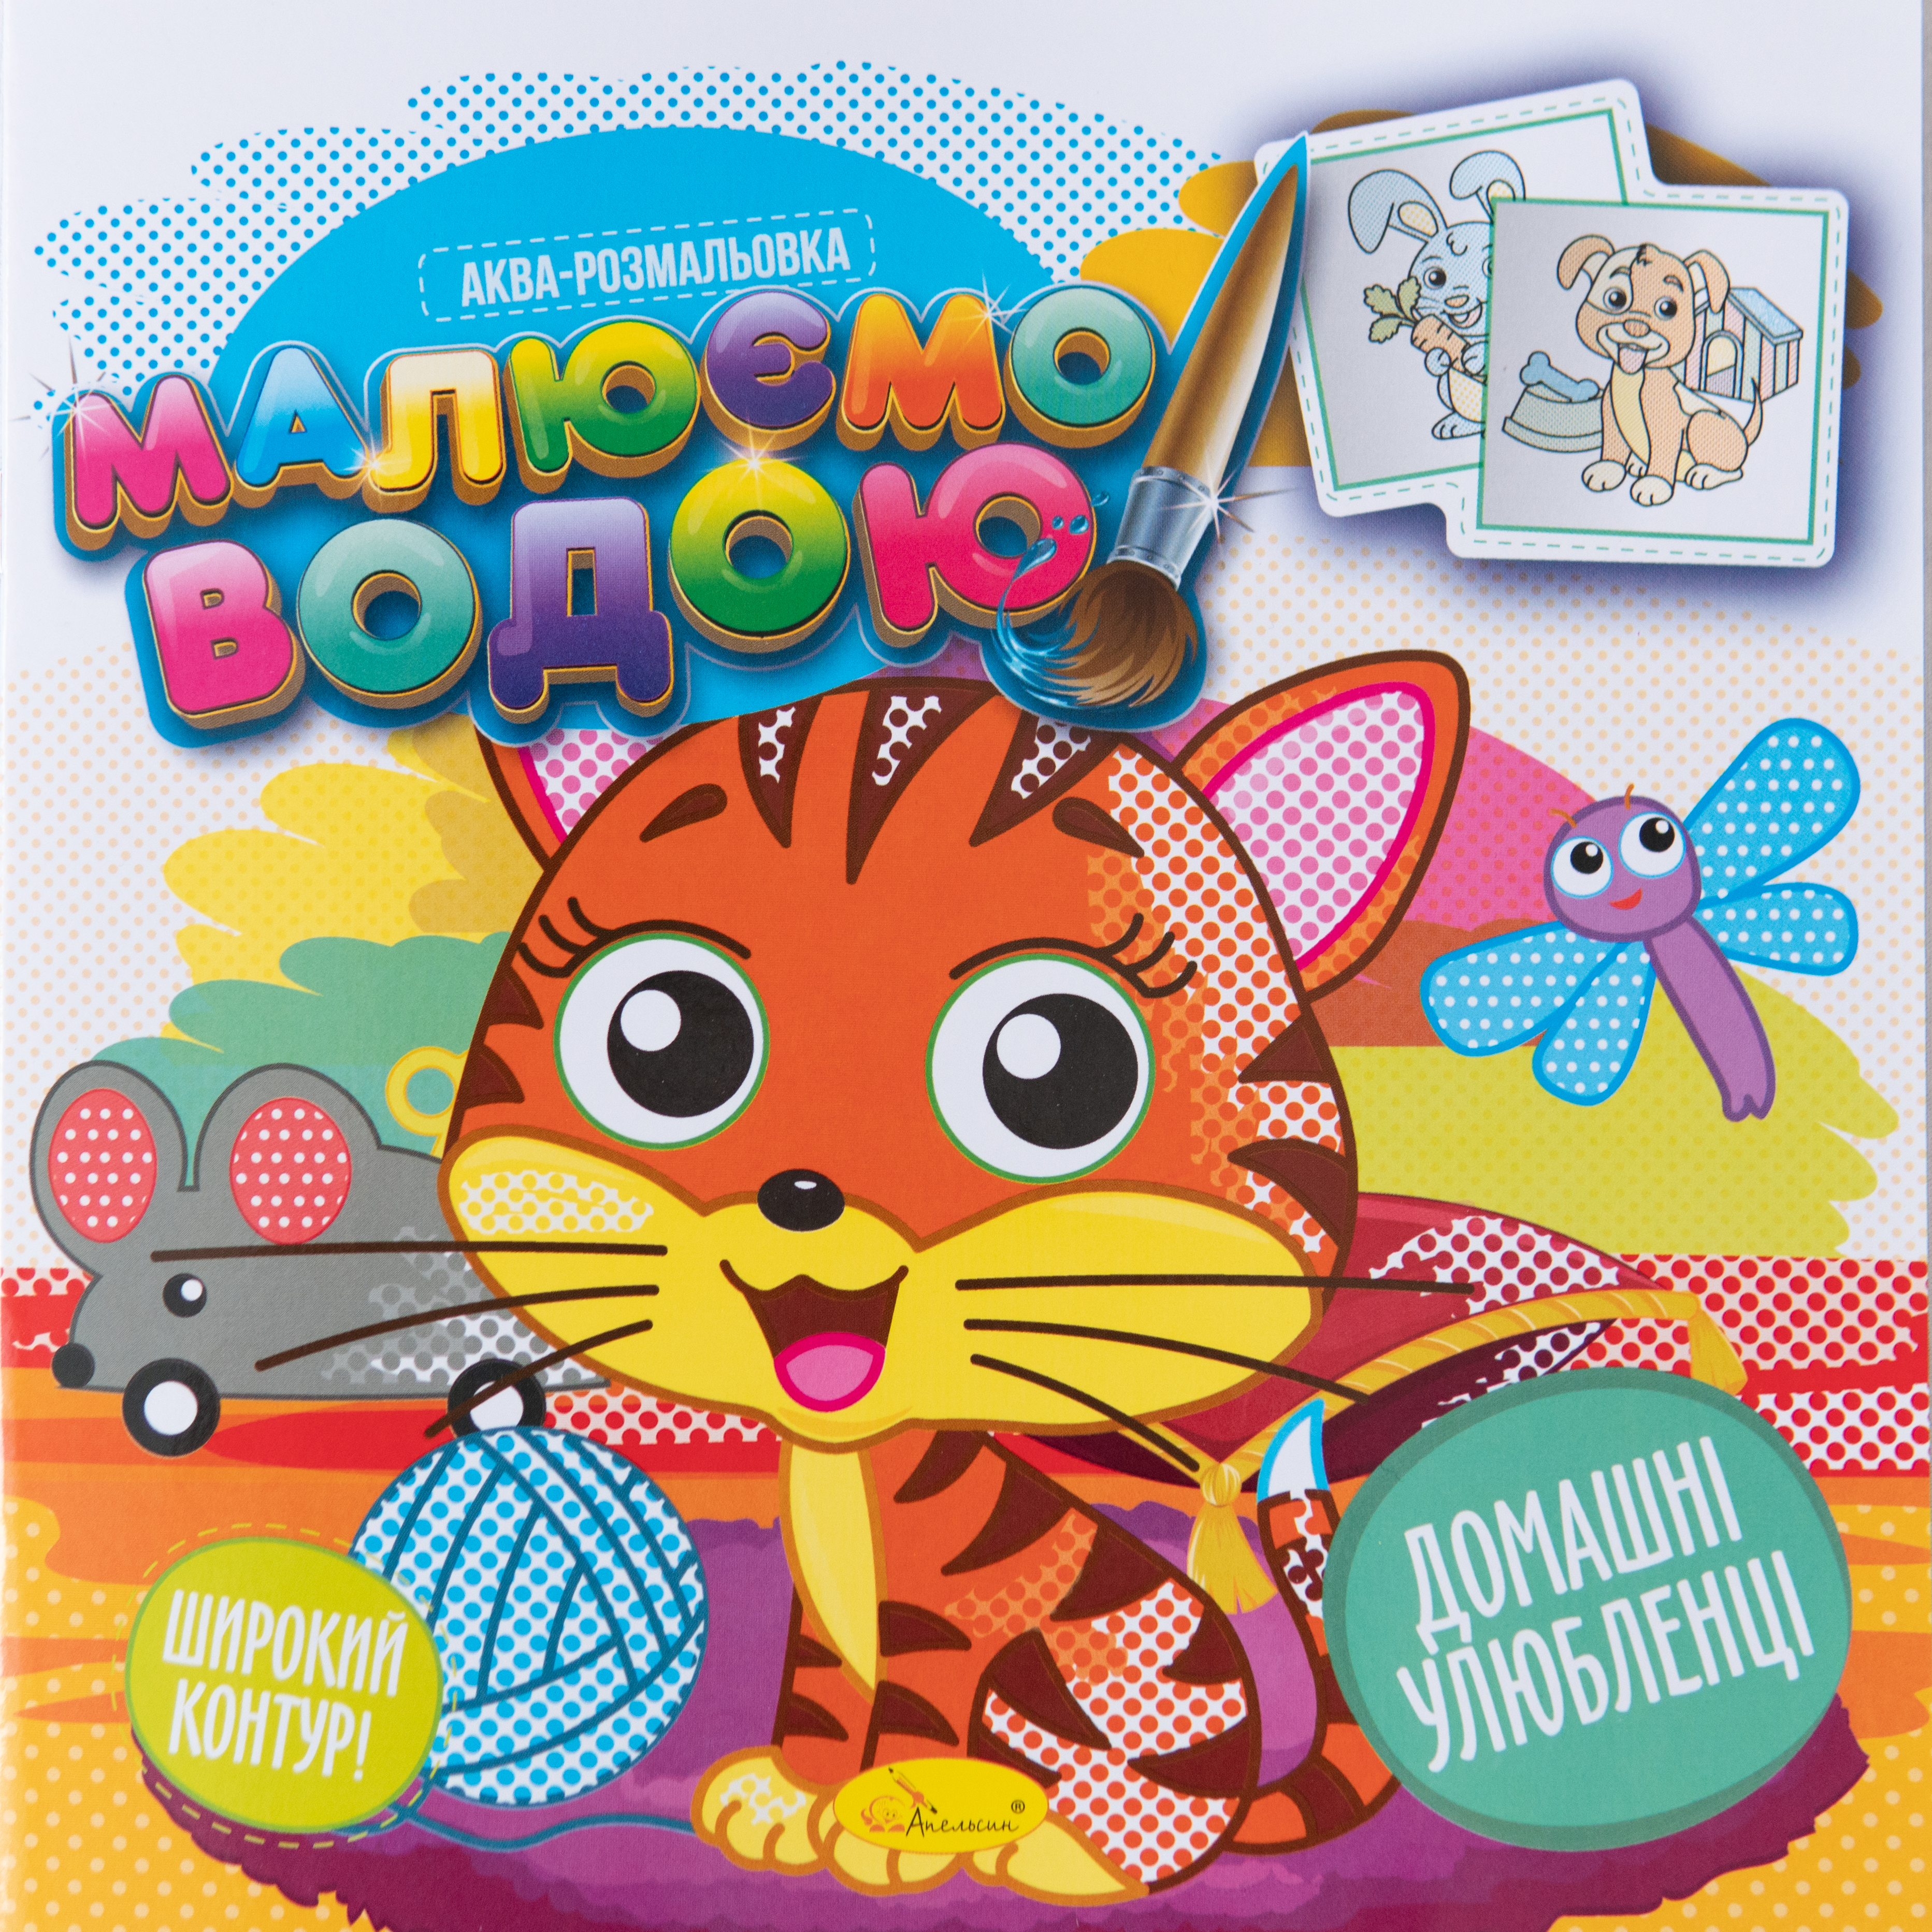 Aquarell-Malbuch Haustiere - Vorbereitung auf die Schulein ukrainischer Sprache/Aquarell-Malbuch Haustiere - Vorbereitung auf die Schulein ukrainischer Sprache